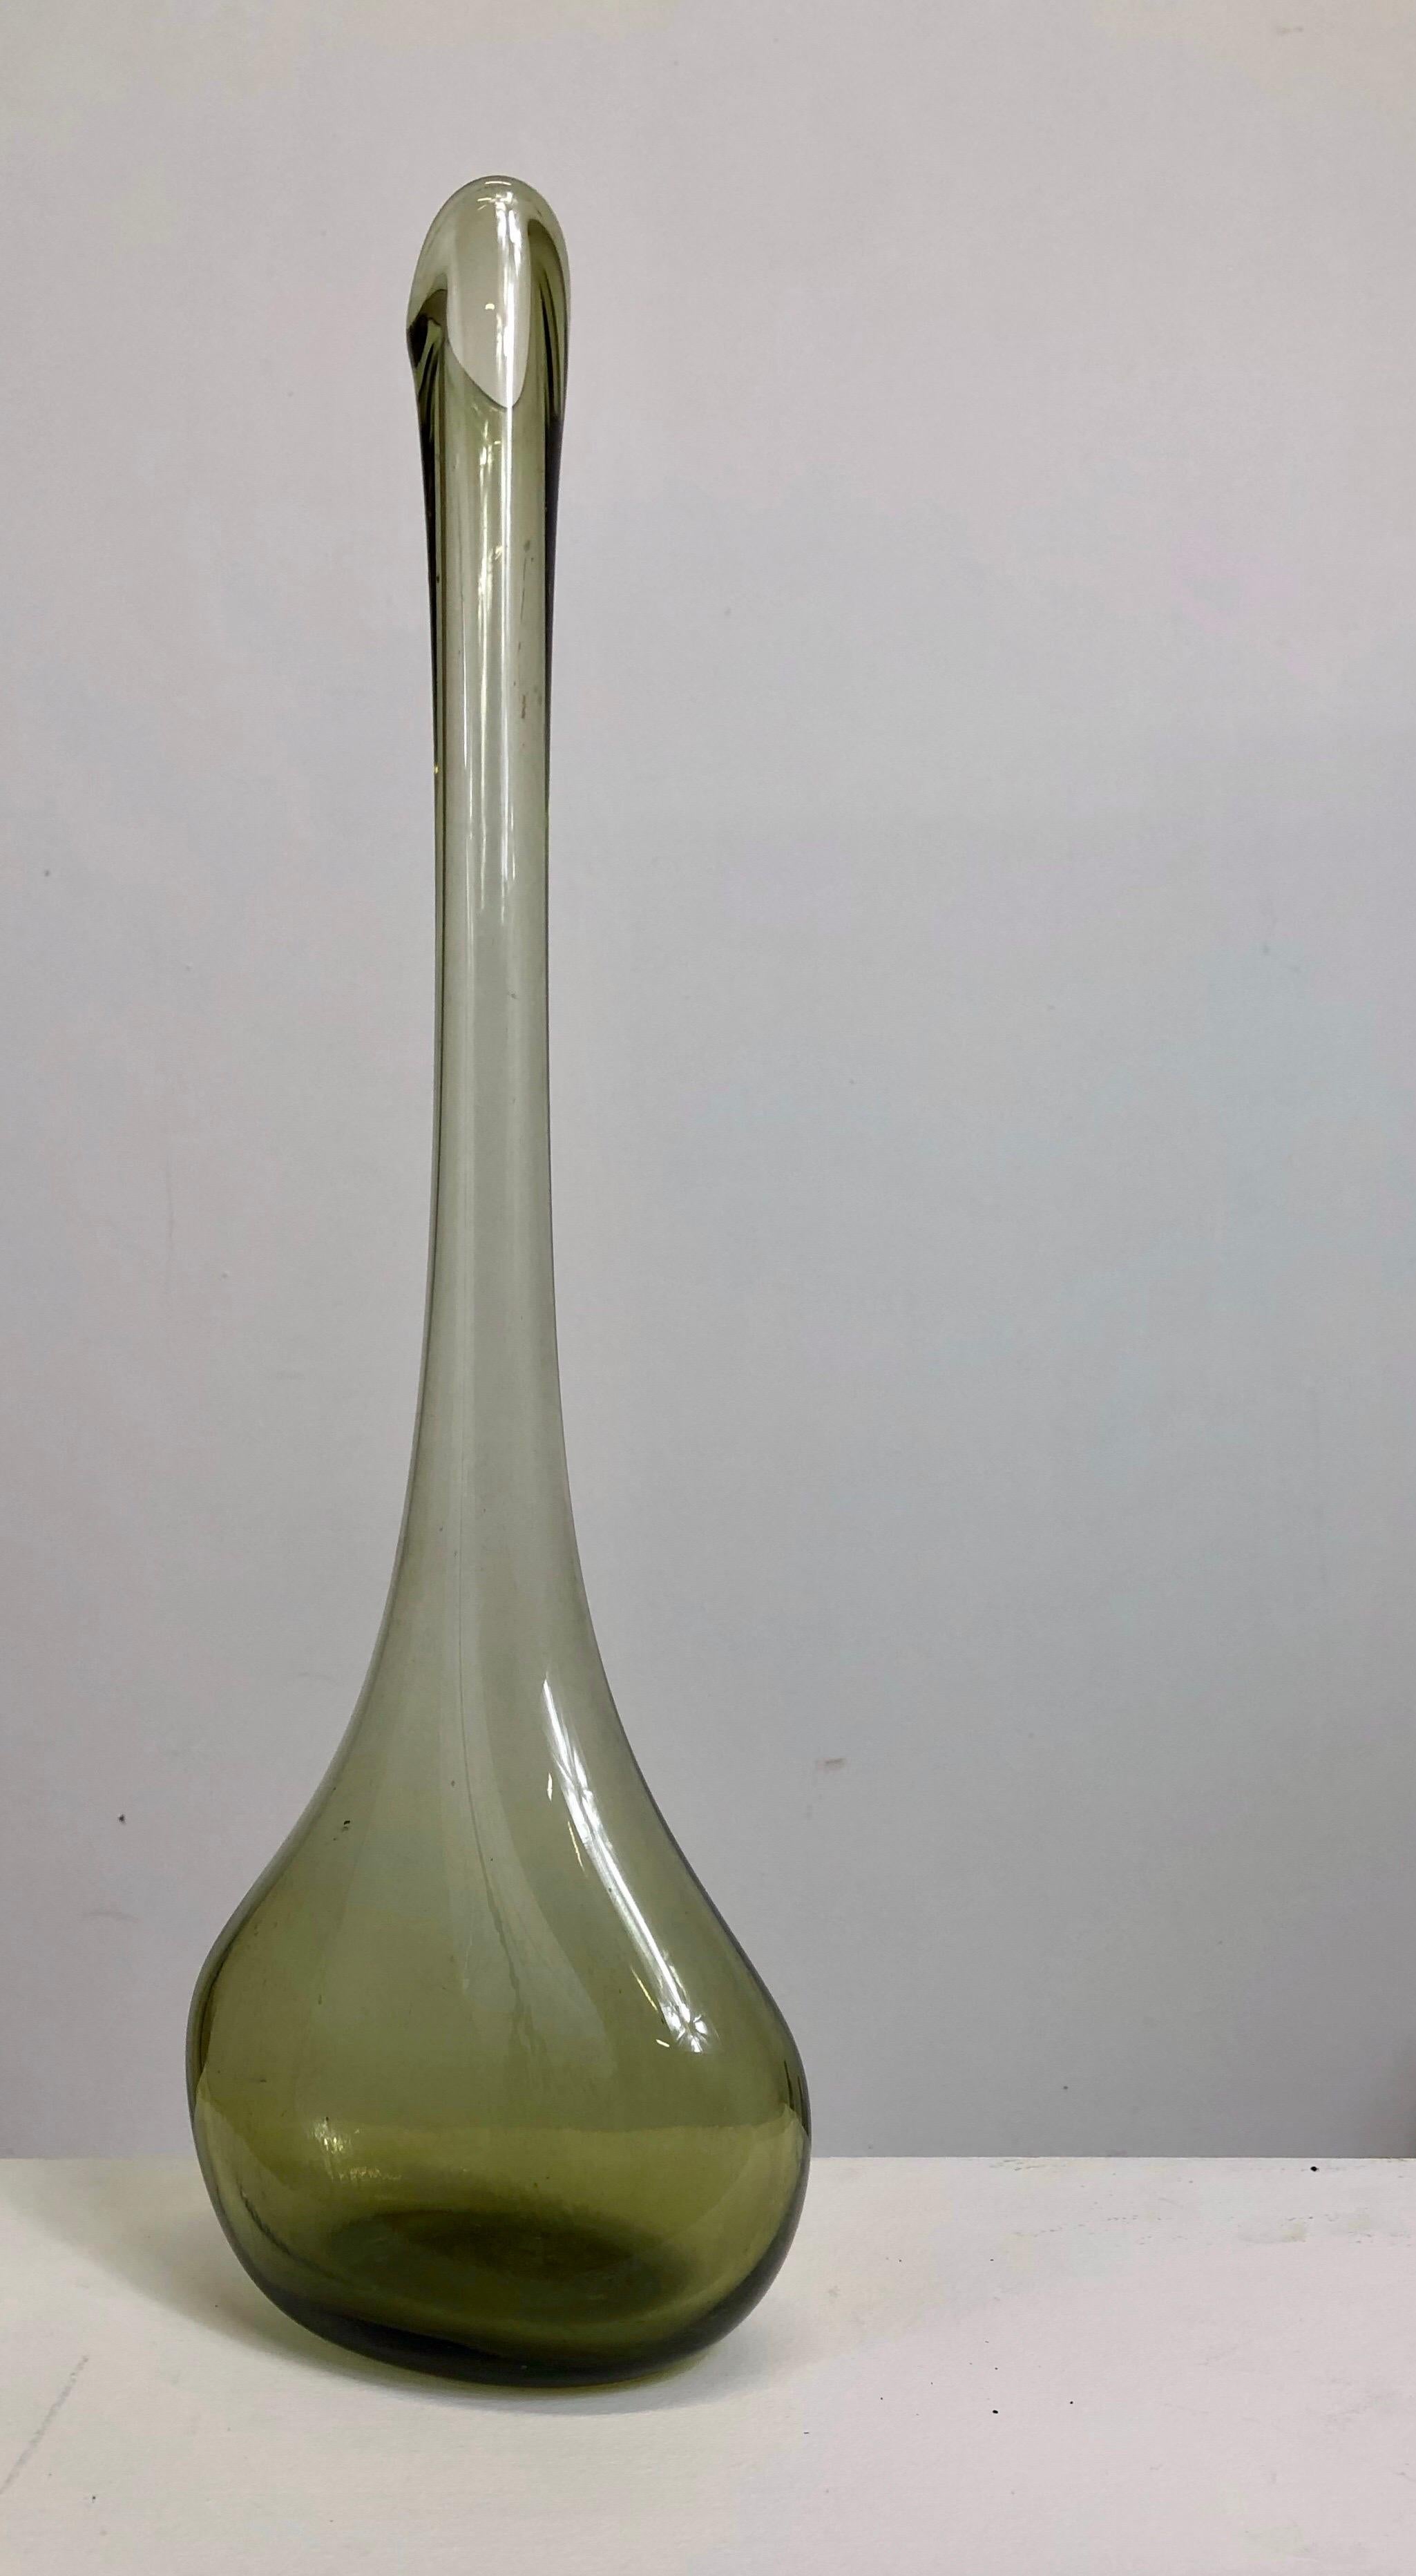 Claude Morin (1932-2021)

Une bouteille ou un vase en verre vert de l'artiste français Claude Morin

Signé et daté au dos.
MORIN 
25 11 78

Original en parfait état.